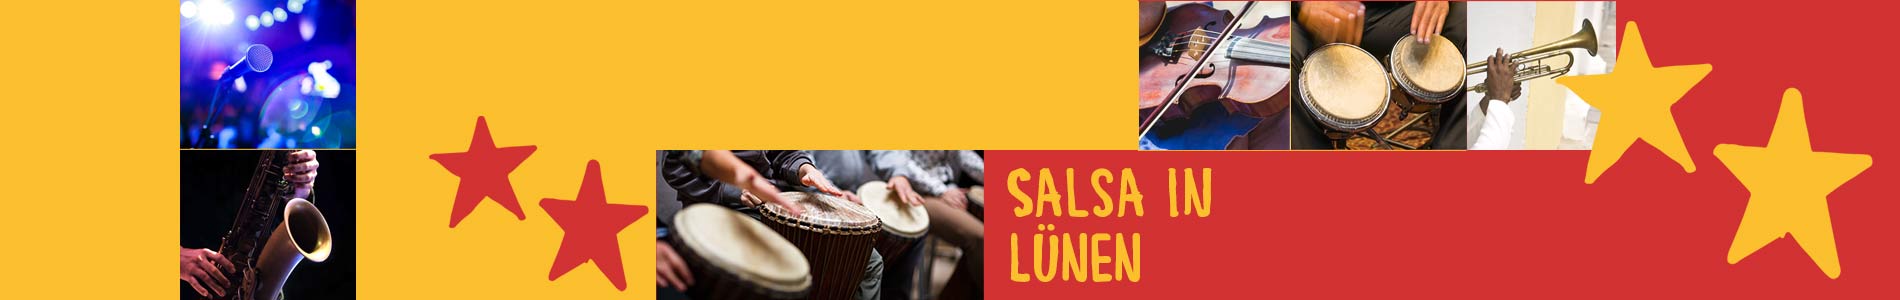 Salsa in Lünen – Salsa lernen und tanzen, Tanzkurse, Partys, Veranstaltungen